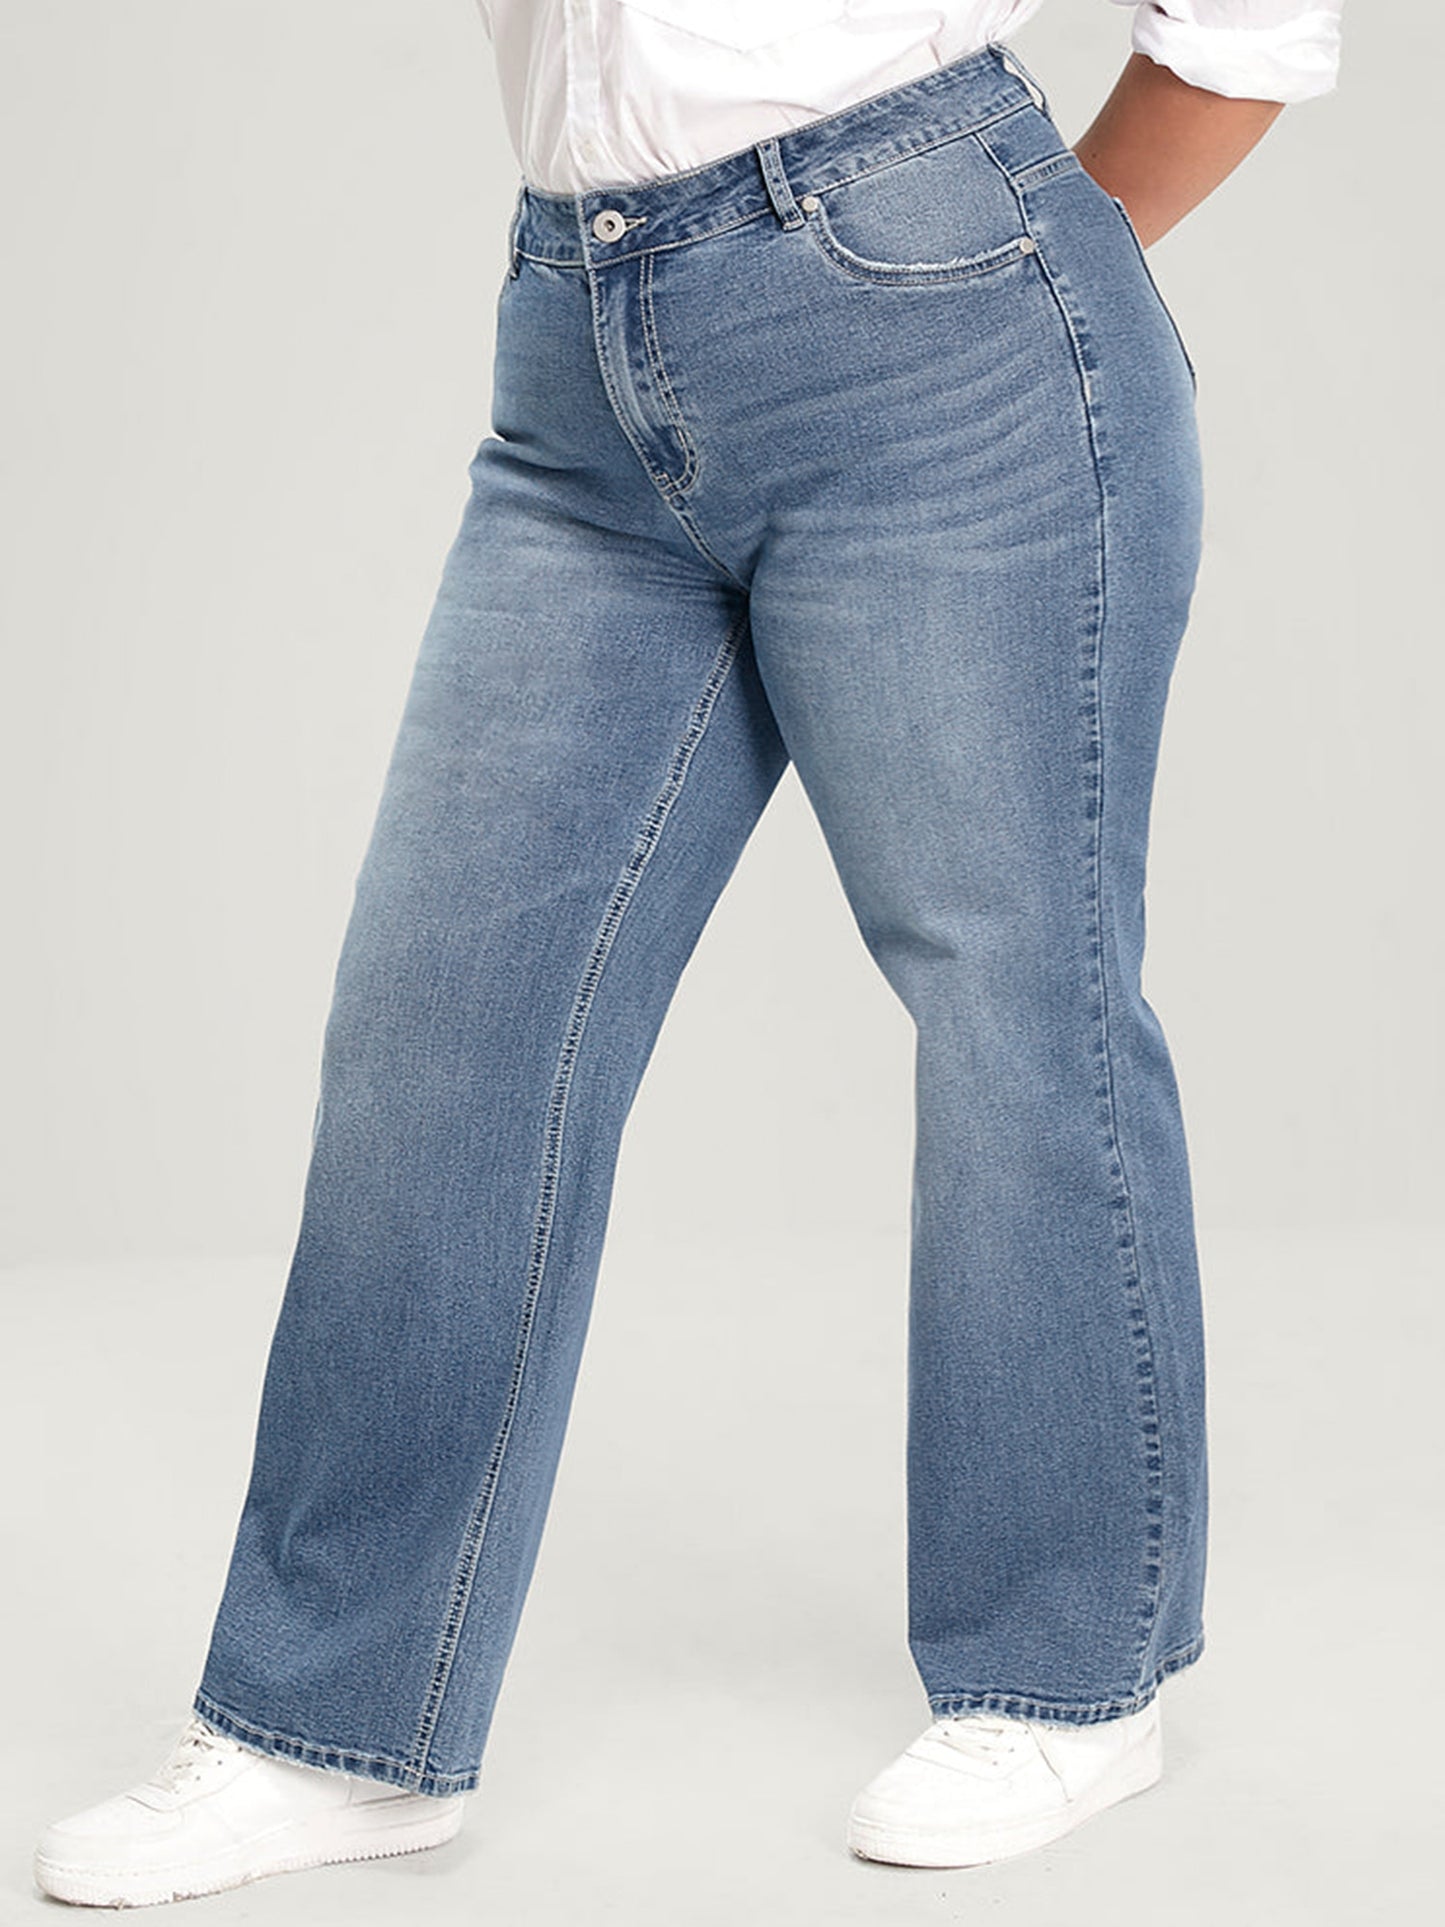 Brunch Bunch Jeans XL-8XL